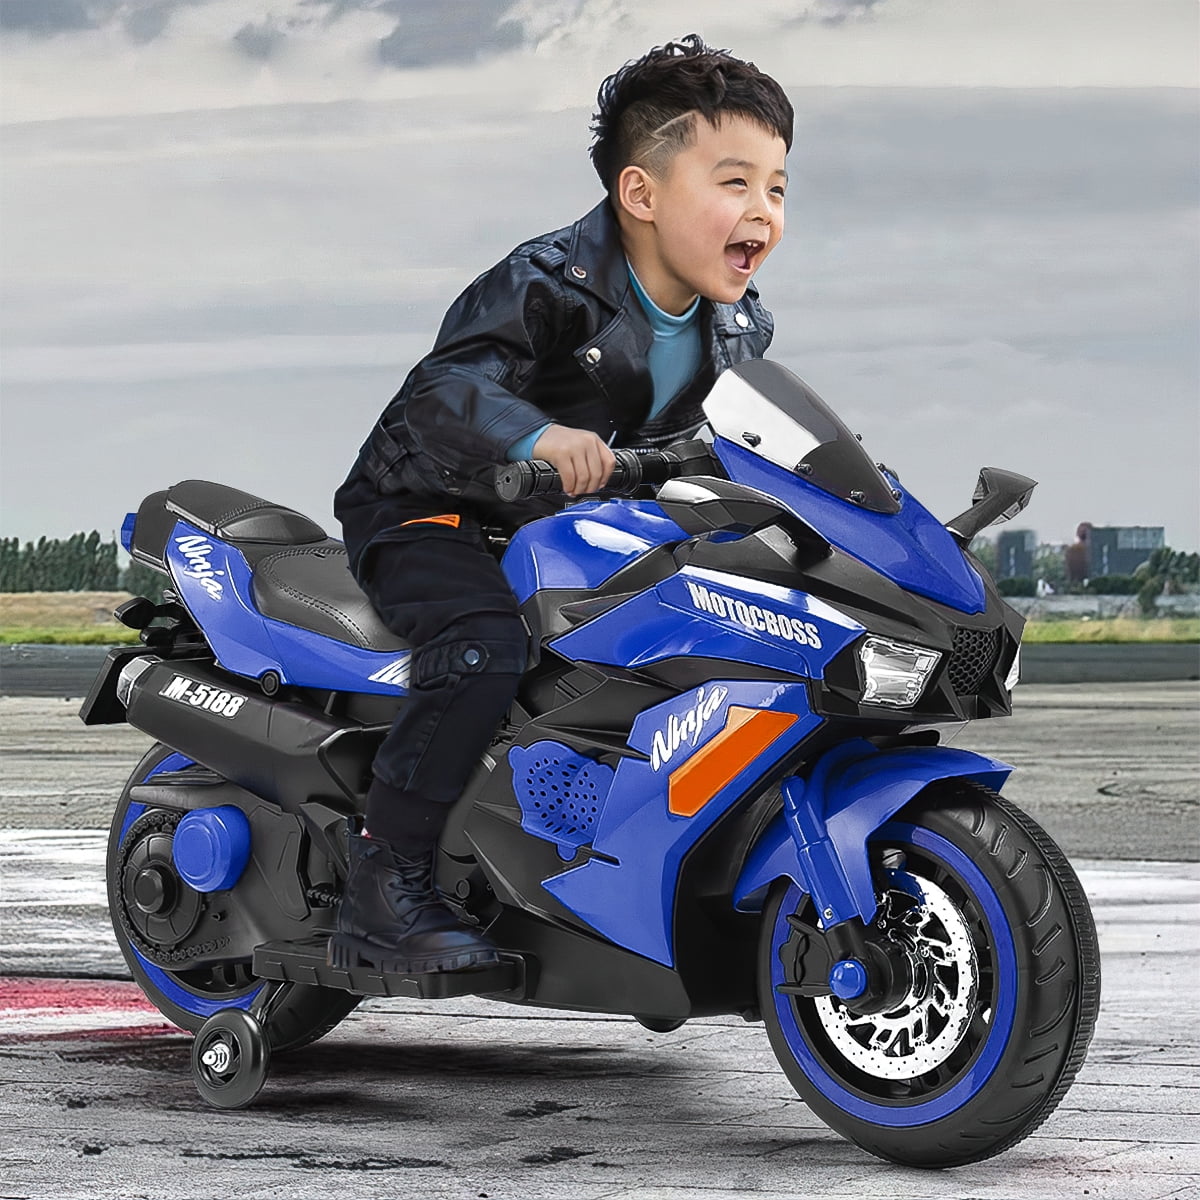 Buy 12V Ride on Motorcykel til børn, 2 hjul Motorcykel legetøj med Bluetooth, musik, lyseblå Online at Lowest Price in Ubuy Denmark.